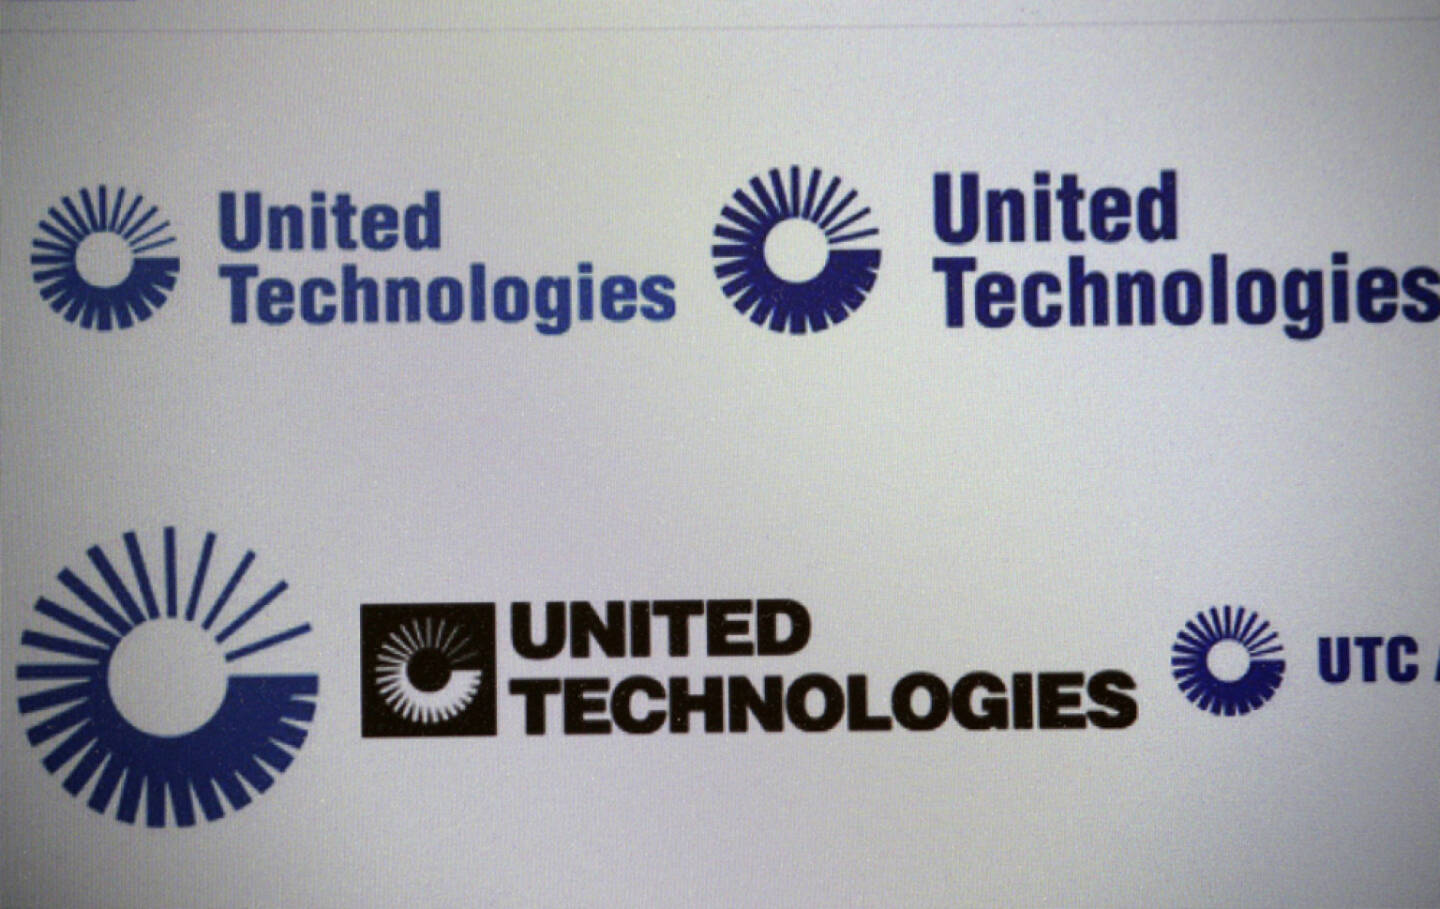 United Technologies, <a href=http://www.shutterstock.com/gallery-320989p1.html?cr=00&pl=edit-00>360b</a> / <a href=http://www.shutterstock.com/?cr=00&pl=edit-00>Shutterstock.com</a> , 360b / Shutterstock.com